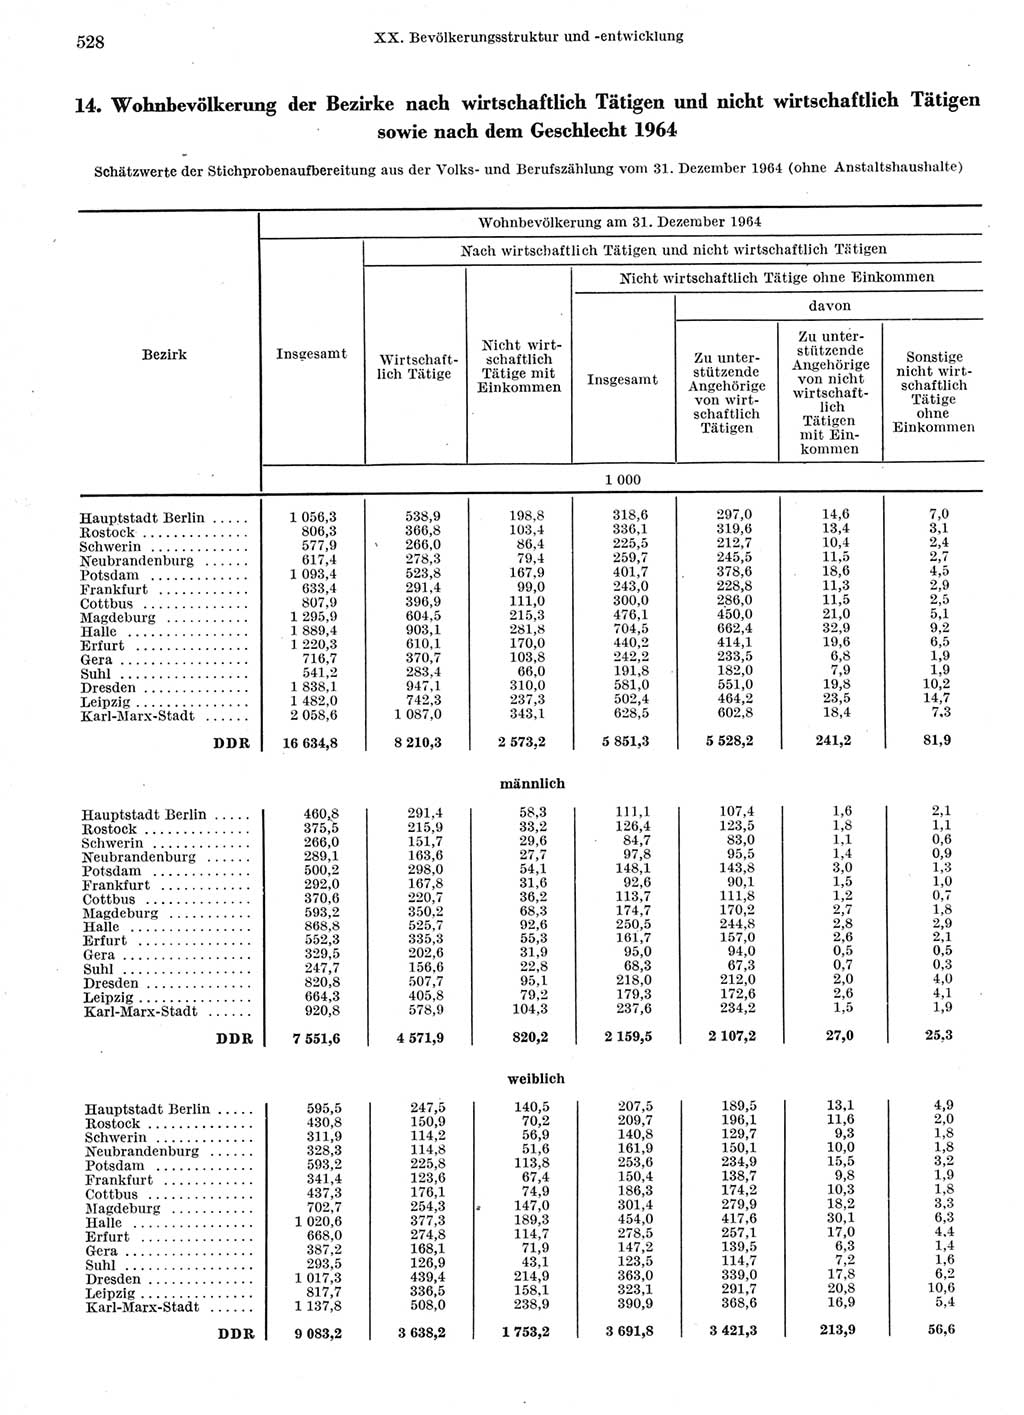 Statistisches Jahrbuch der Deutschen Demokratischen Republik (DDR) 1966, Seite 528 (Stat. Jb. DDR 1966, S. 528)